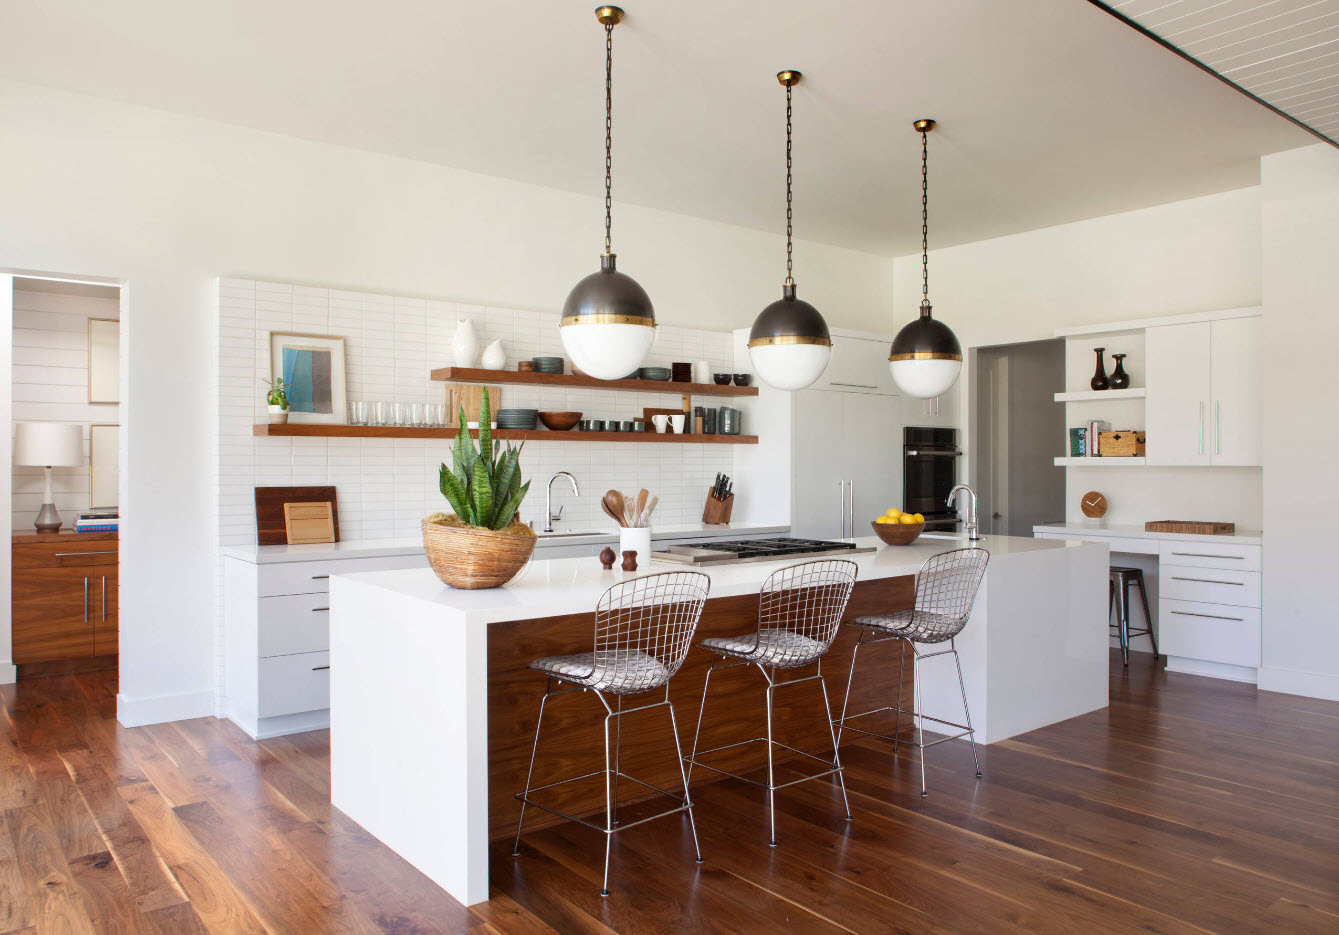 MidCentury Modern Kitchen Designs That Feature A Warm